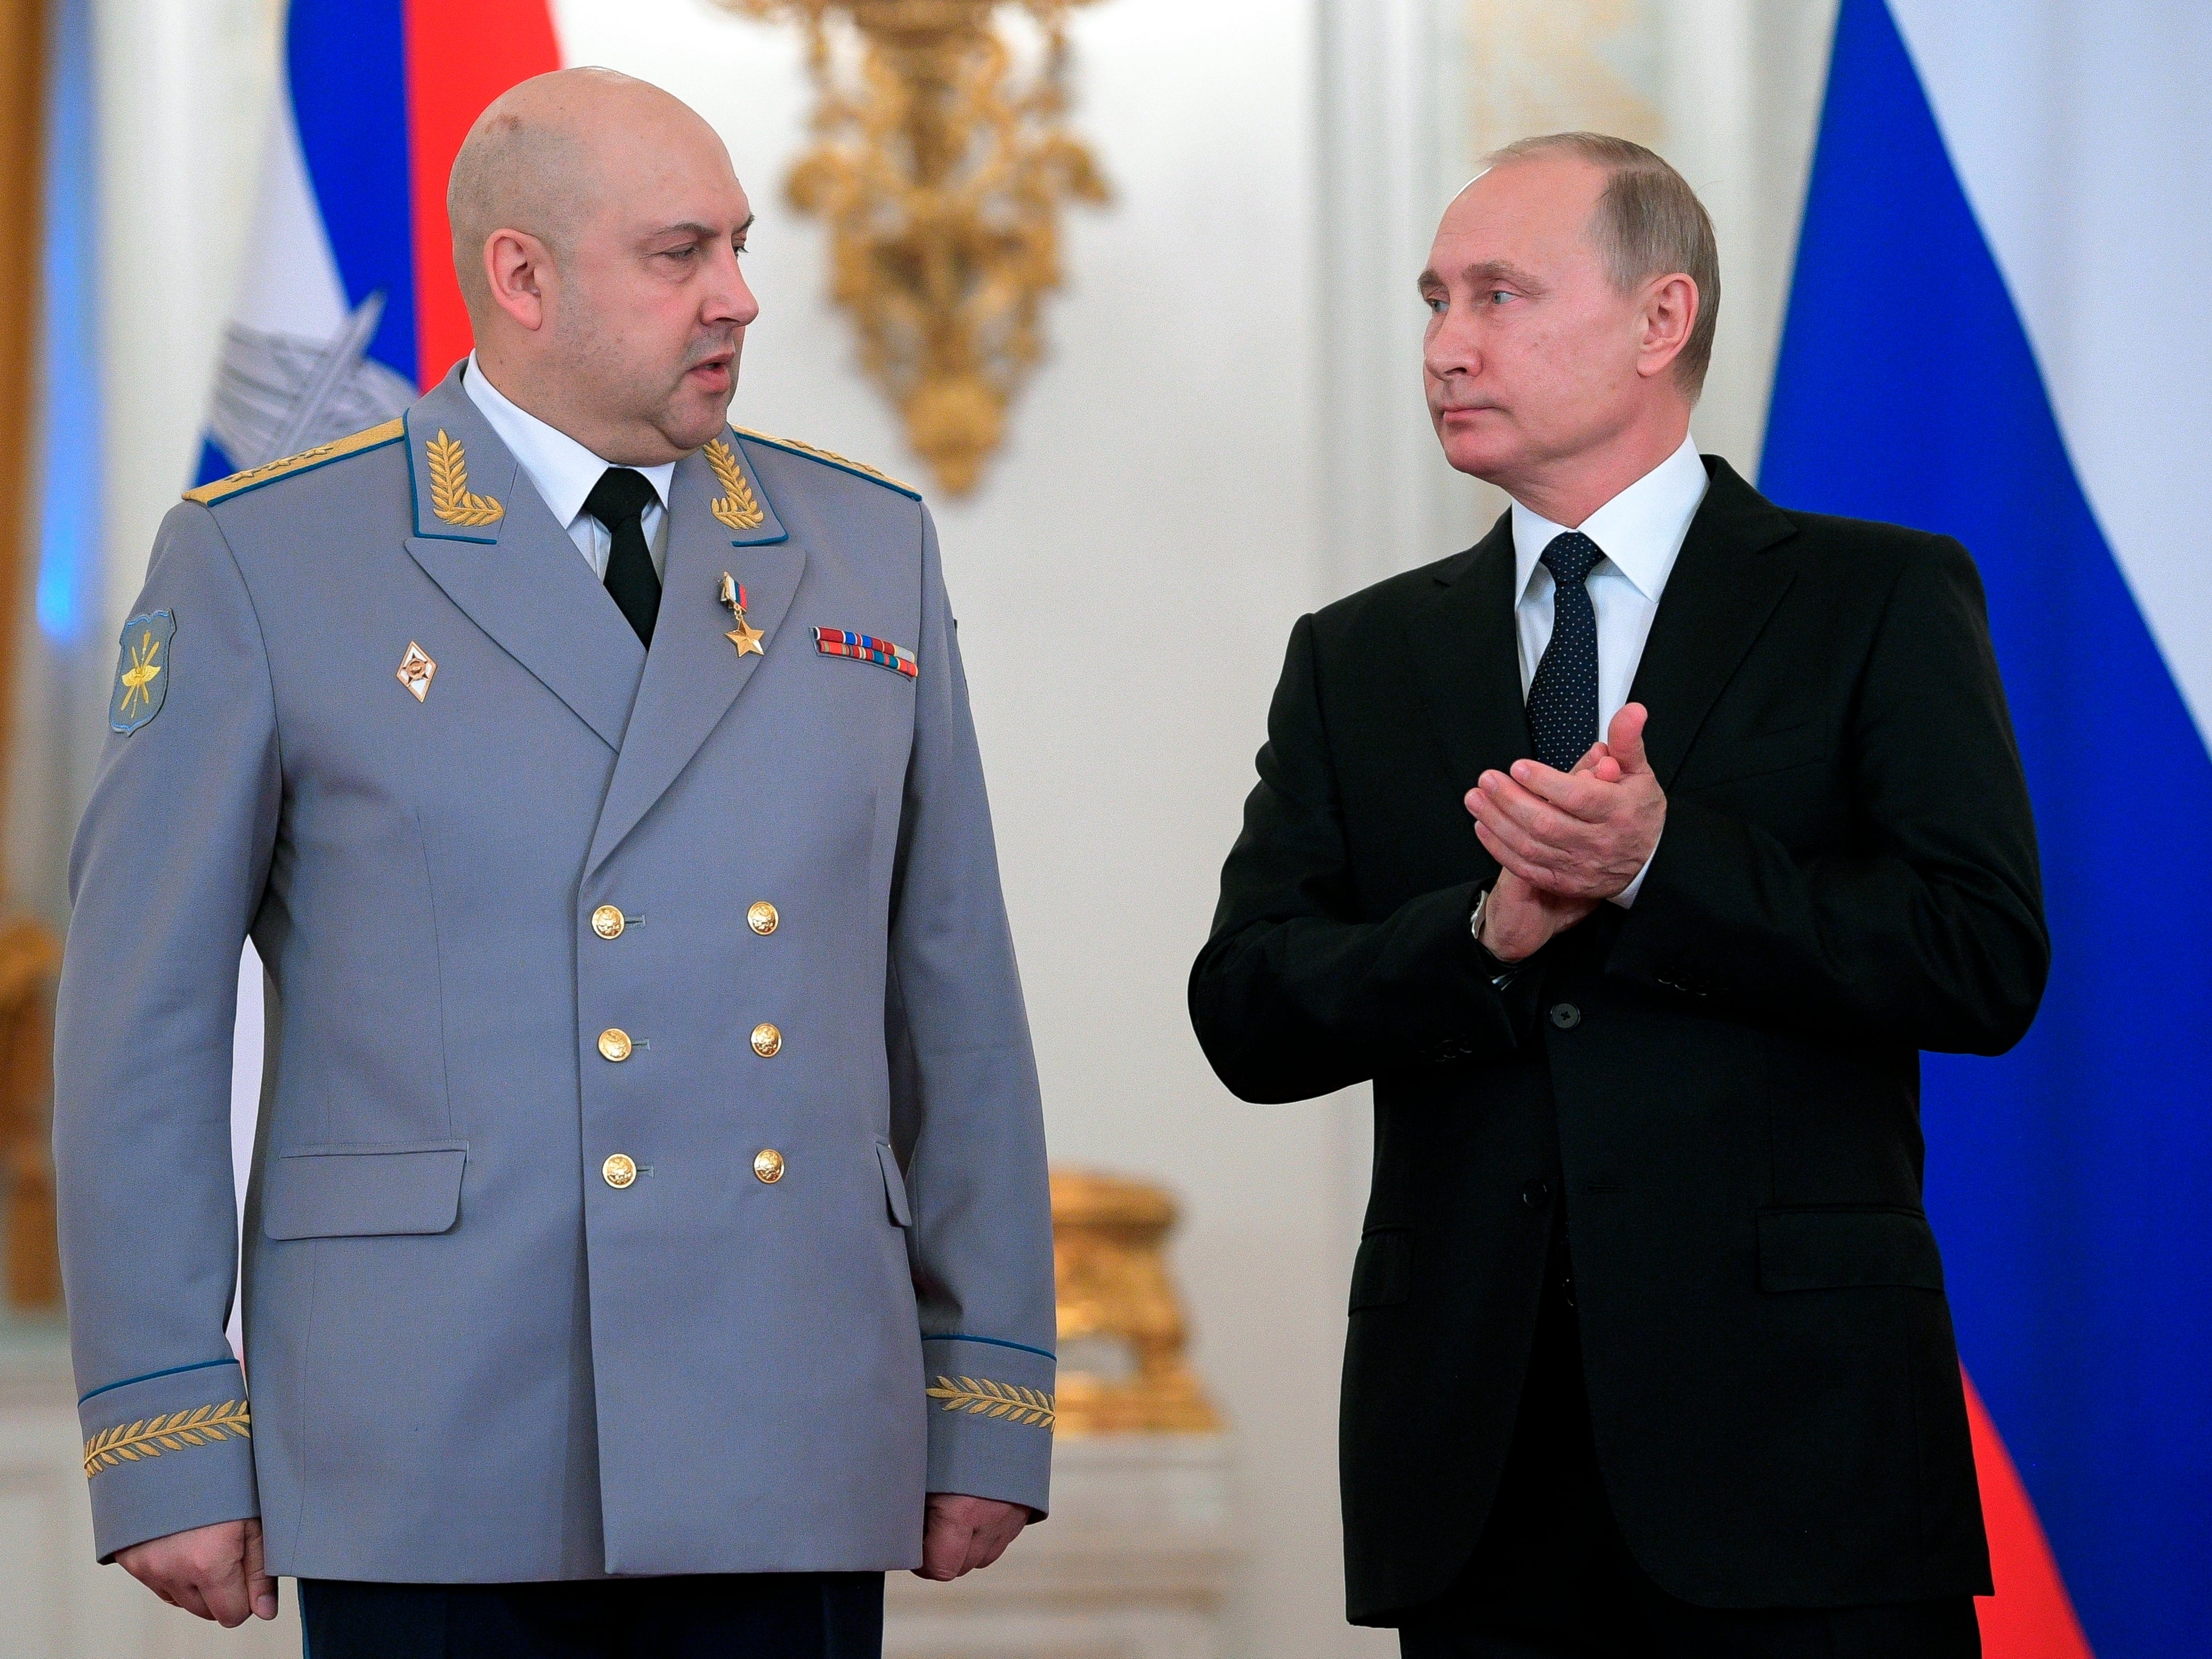 Sergei Surovikin, aquí junto a Vladimir Putin, está supuestamente involucrado en crímenes de guerra en Siria